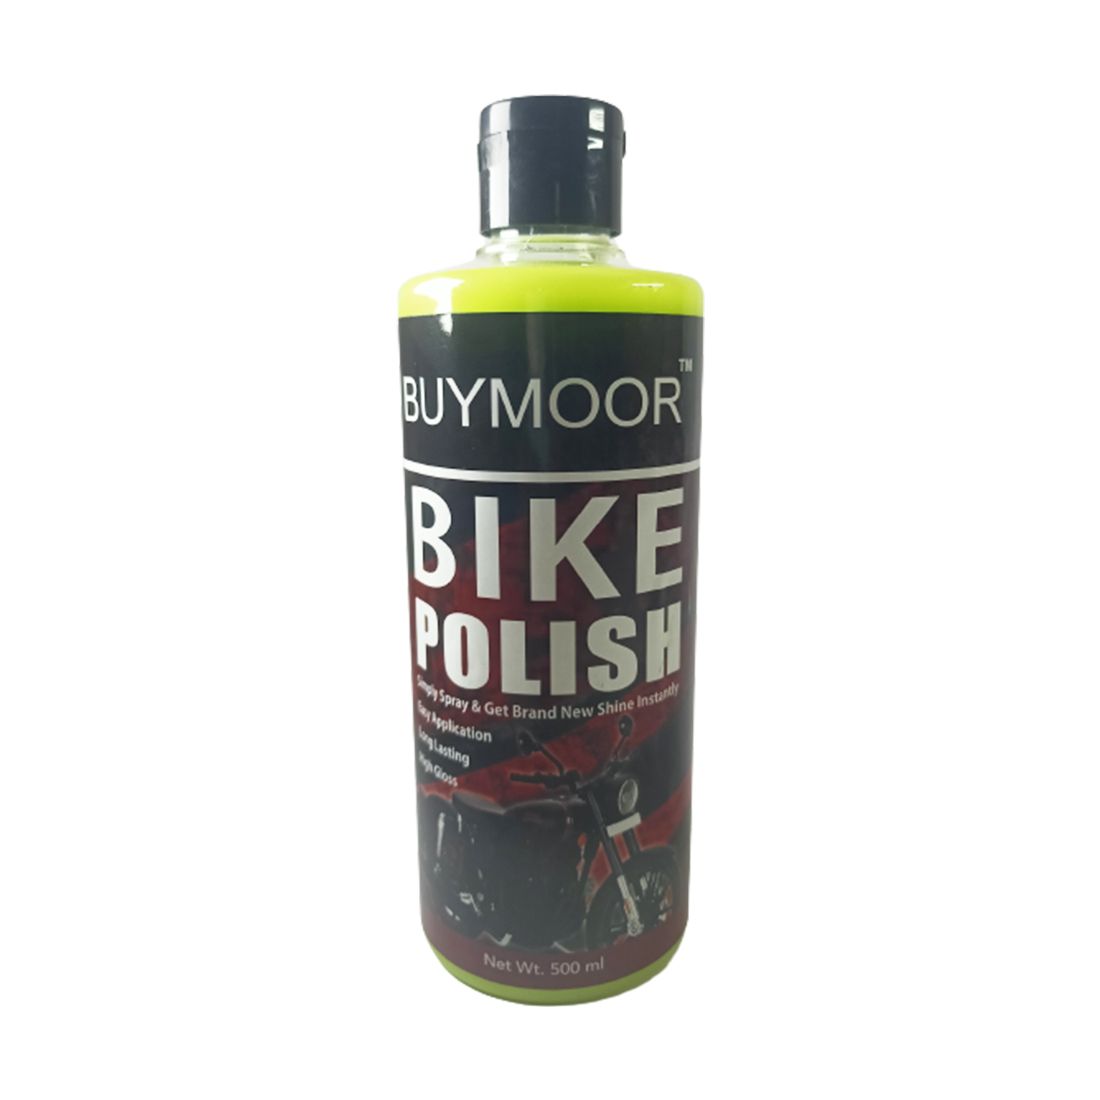 BUYMOOR Premium Bike Polish - Ultimate Shine & Protection for Your Motorcycle